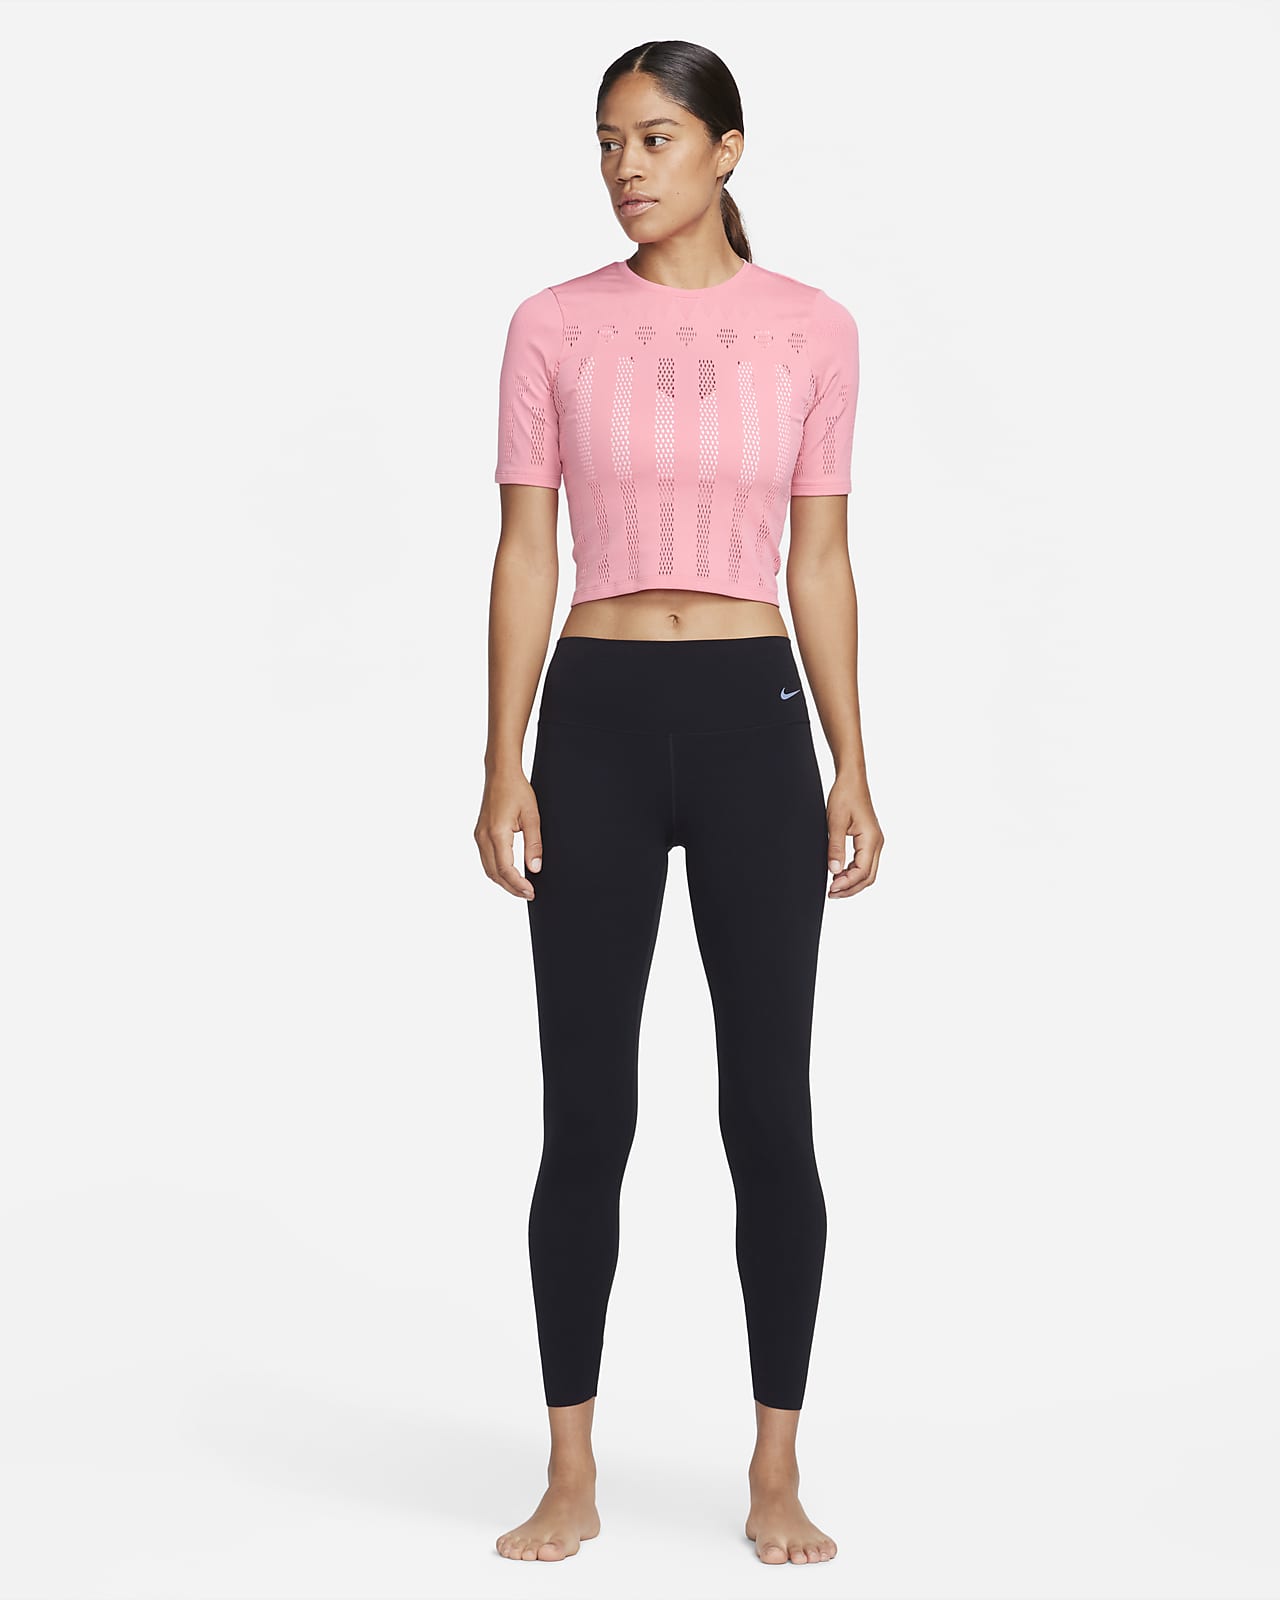 Women's Yoga Luxe Crop Top, Nike